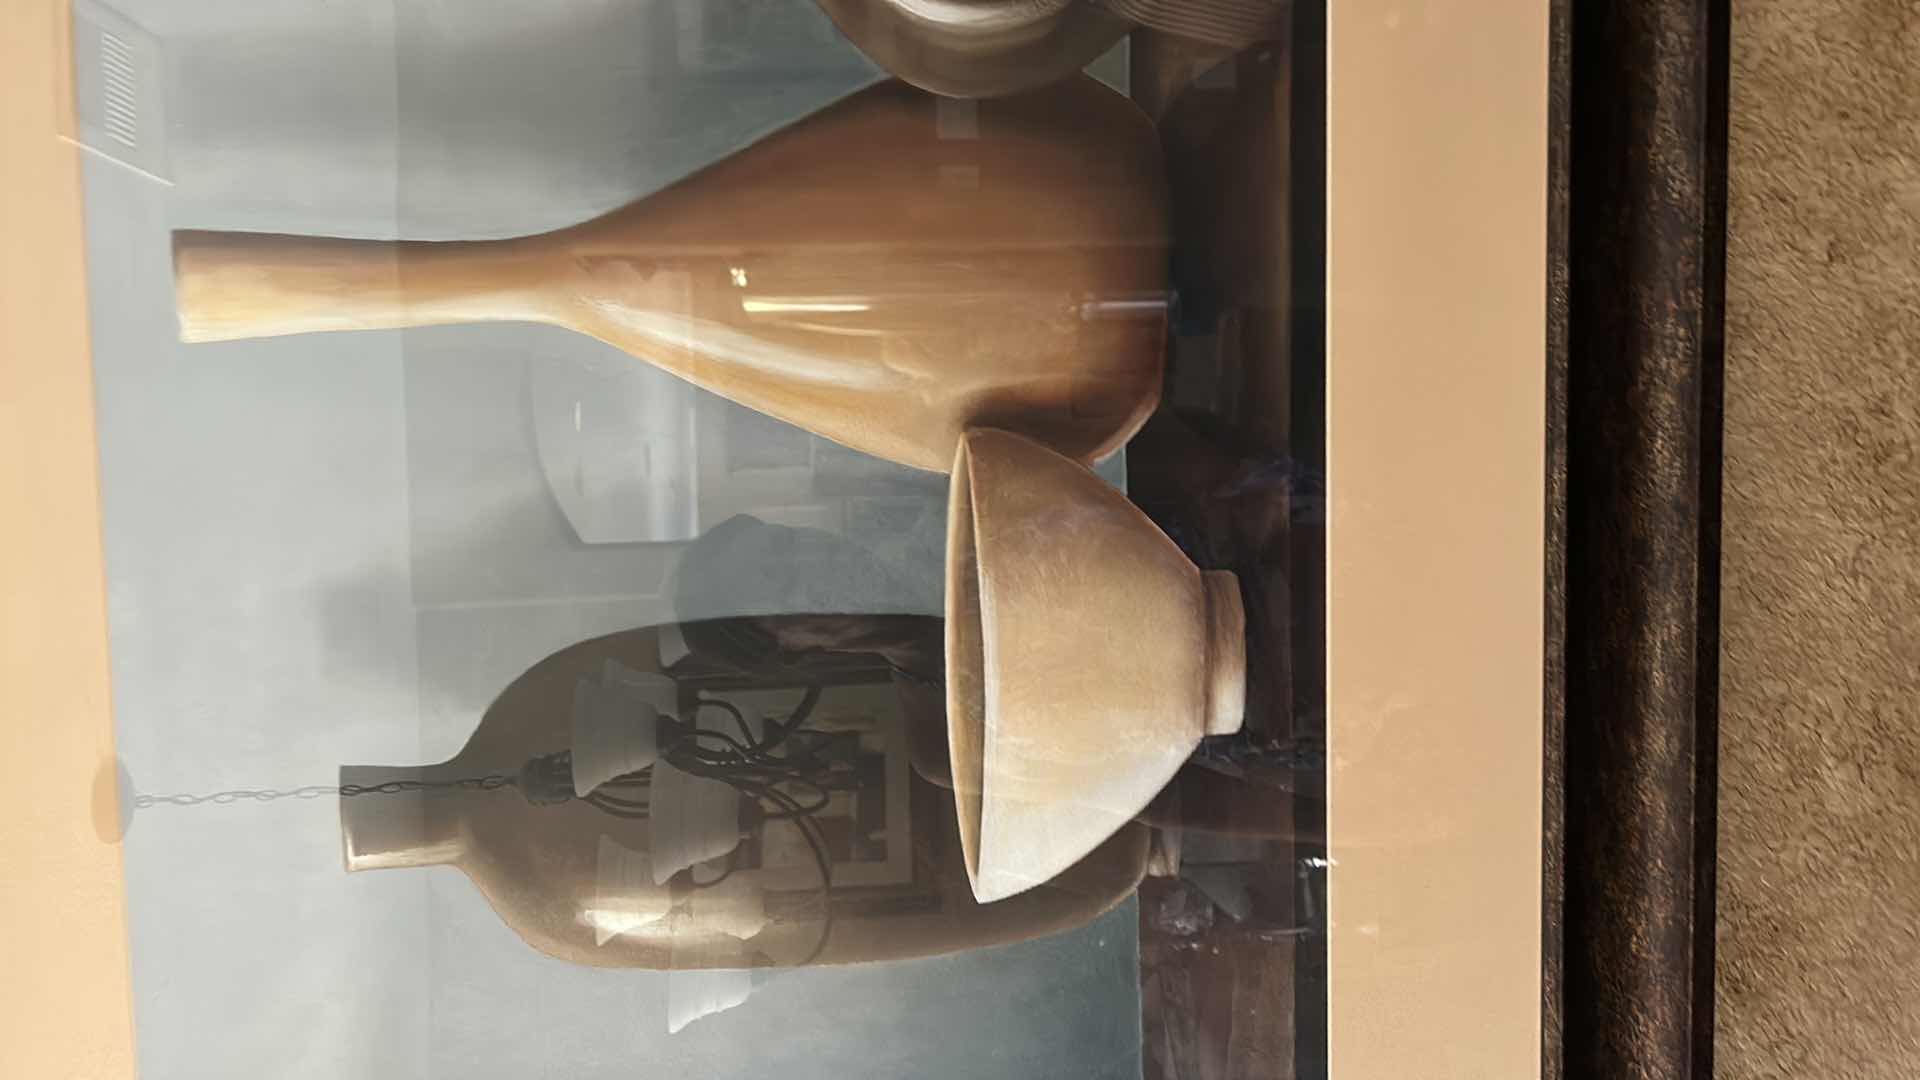 Photo 5 of Home decor still life vases framed artwork 46“ x 38“